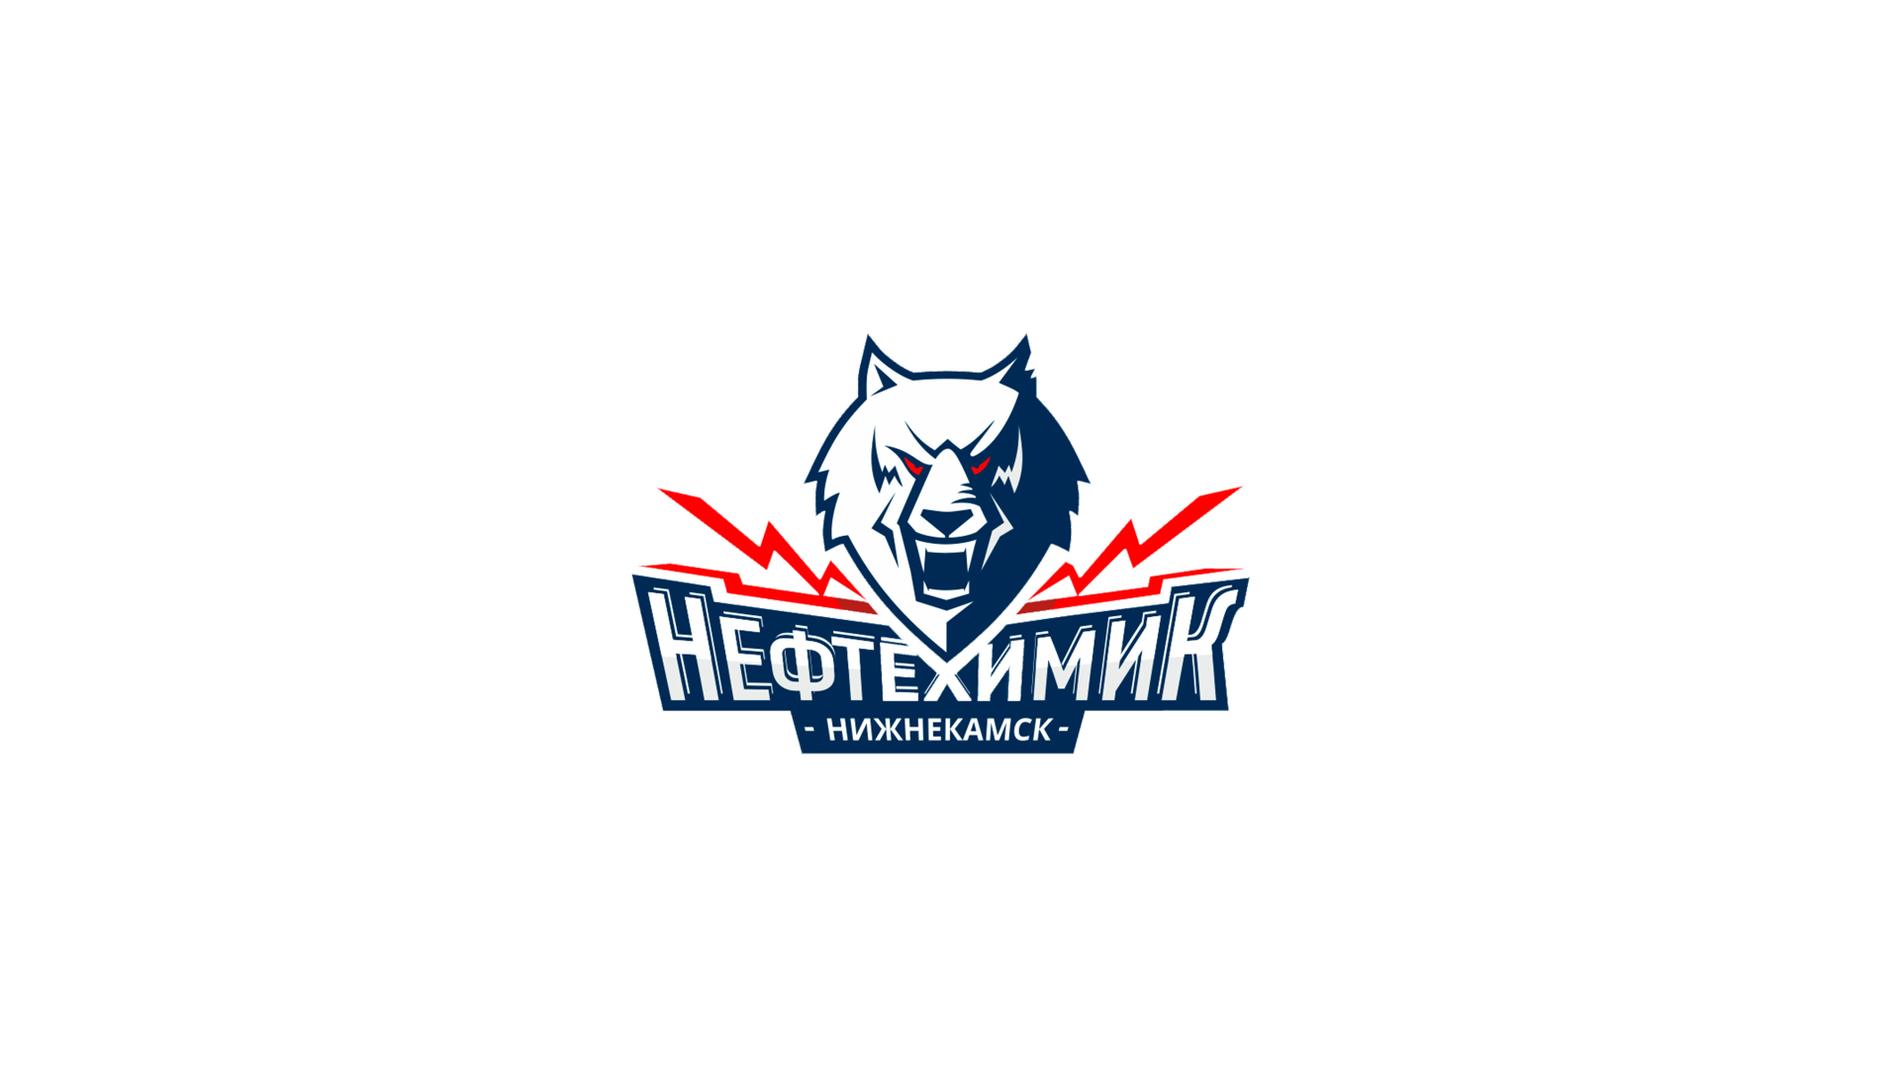 Нефтехимик хк клуб. Эмблема хк Нефтехимик Нижнекамск. Нефтехимик хоккейный клуб эмблема. Логотип хоккейной команды Нефтехимик Нижнекамск. Нефтехимик логотип хоккей.